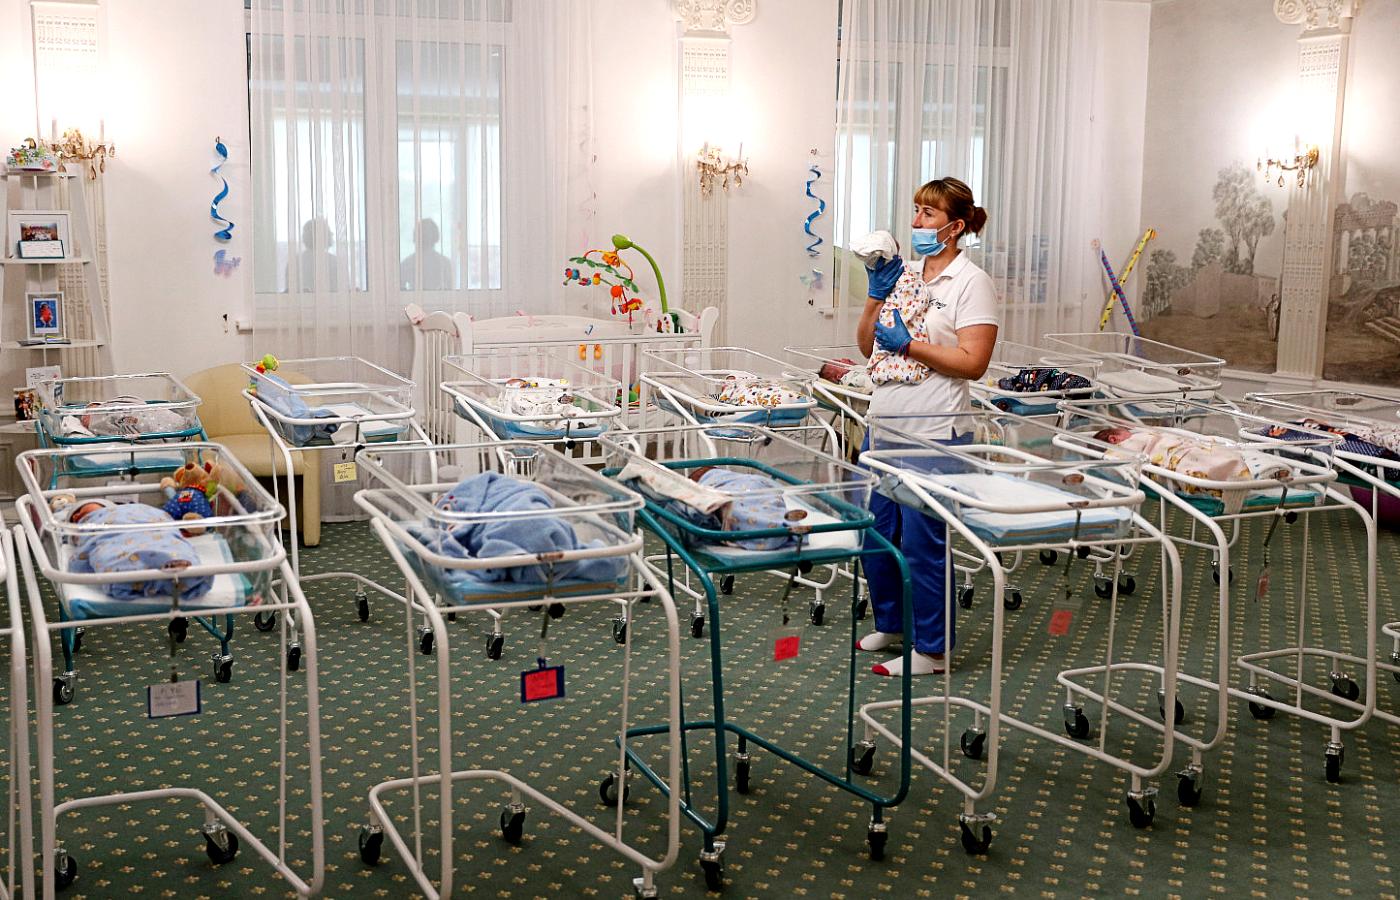 W ukraińskim hotelu „Wenecja” pod opieką niań przebywa obecnie 51 noworodków urodzonych przez surogatki w trakcie pandemii koronawirusa.